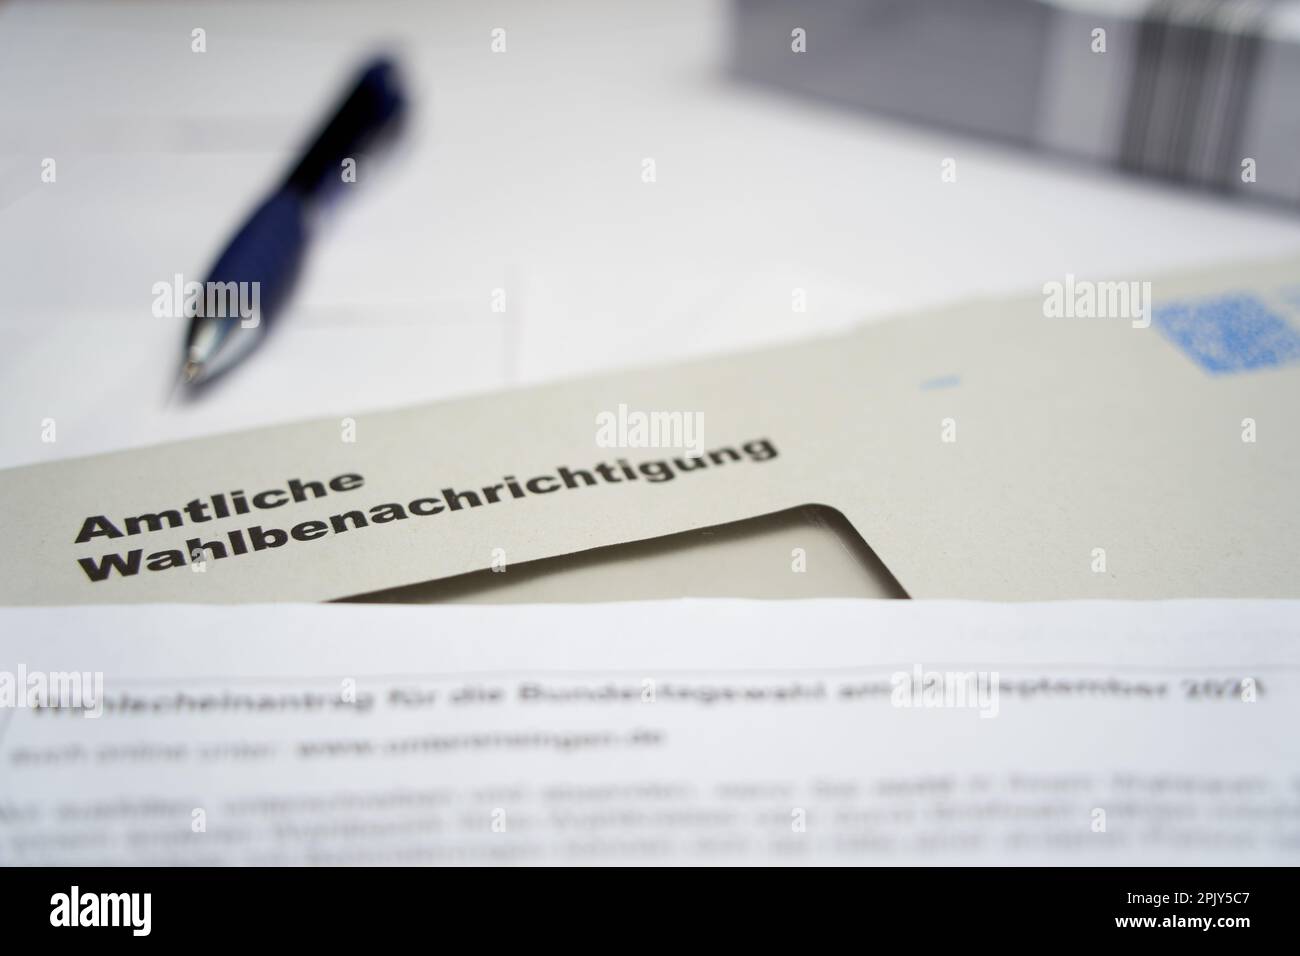 Stoccarda, Germania - 28 agosto 2021: Notifica ufficiale delle elezioni (Wahlbenachrichtigung Bundestagswahl) per le elezioni federali in germania. Multip Foto Stock